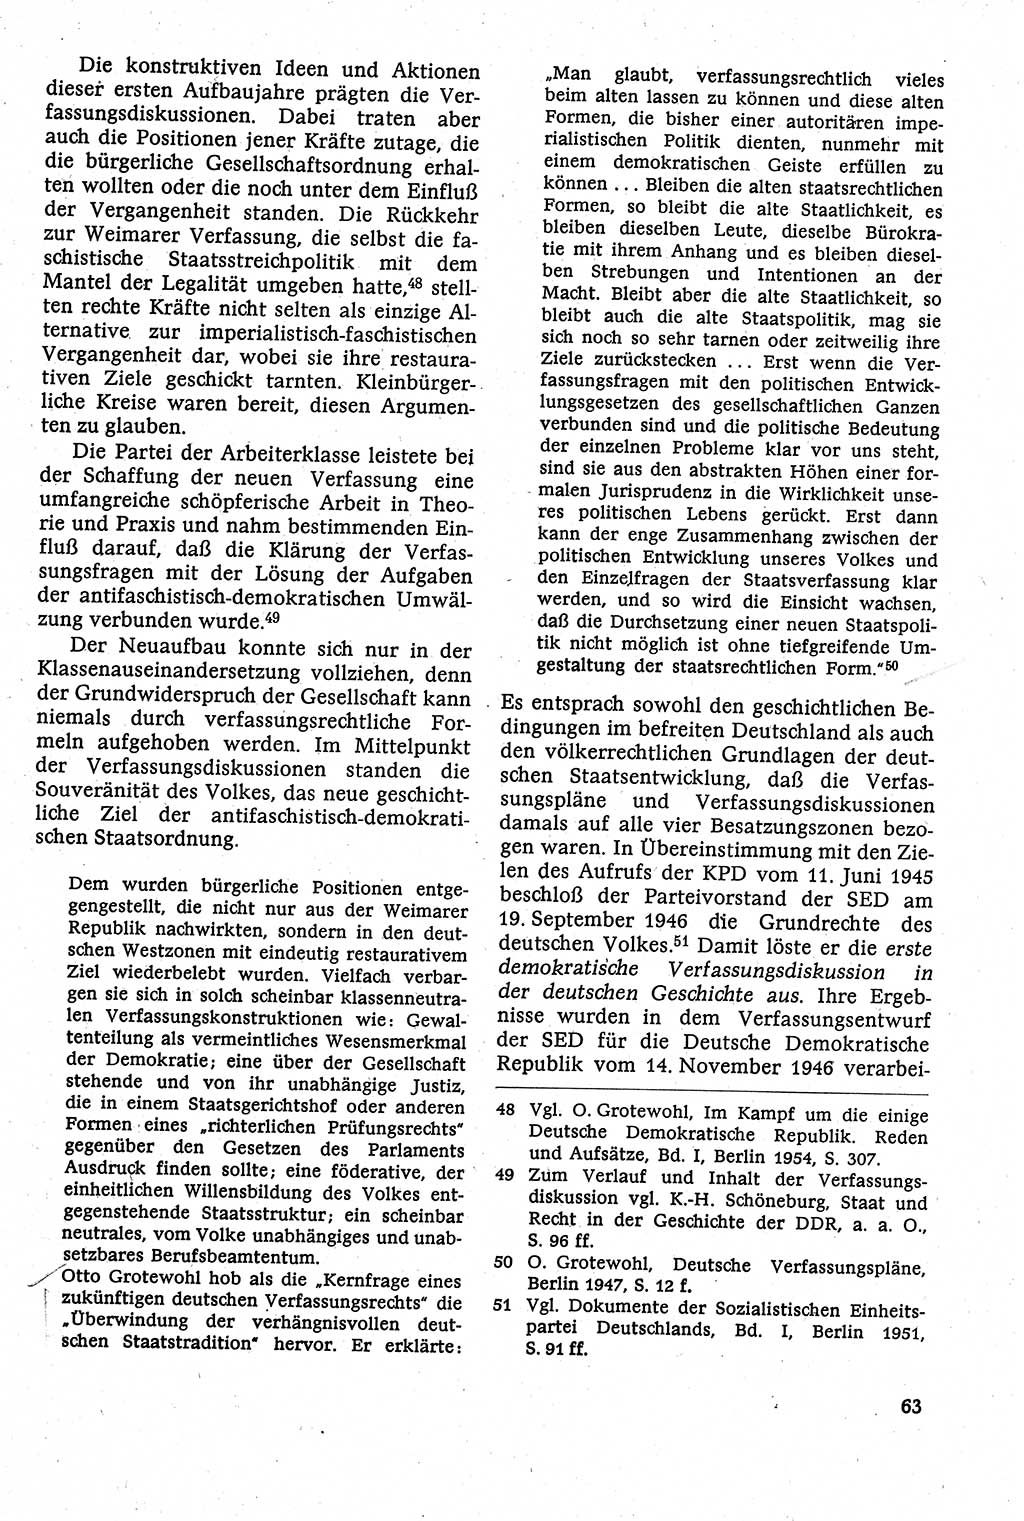 Staatsrecht der DDR [Deutsche Demokratische Republik (DDR)], Lehrbuch 1984, Seite 63 (St.-R. DDR Lb. 1984, S. 63)